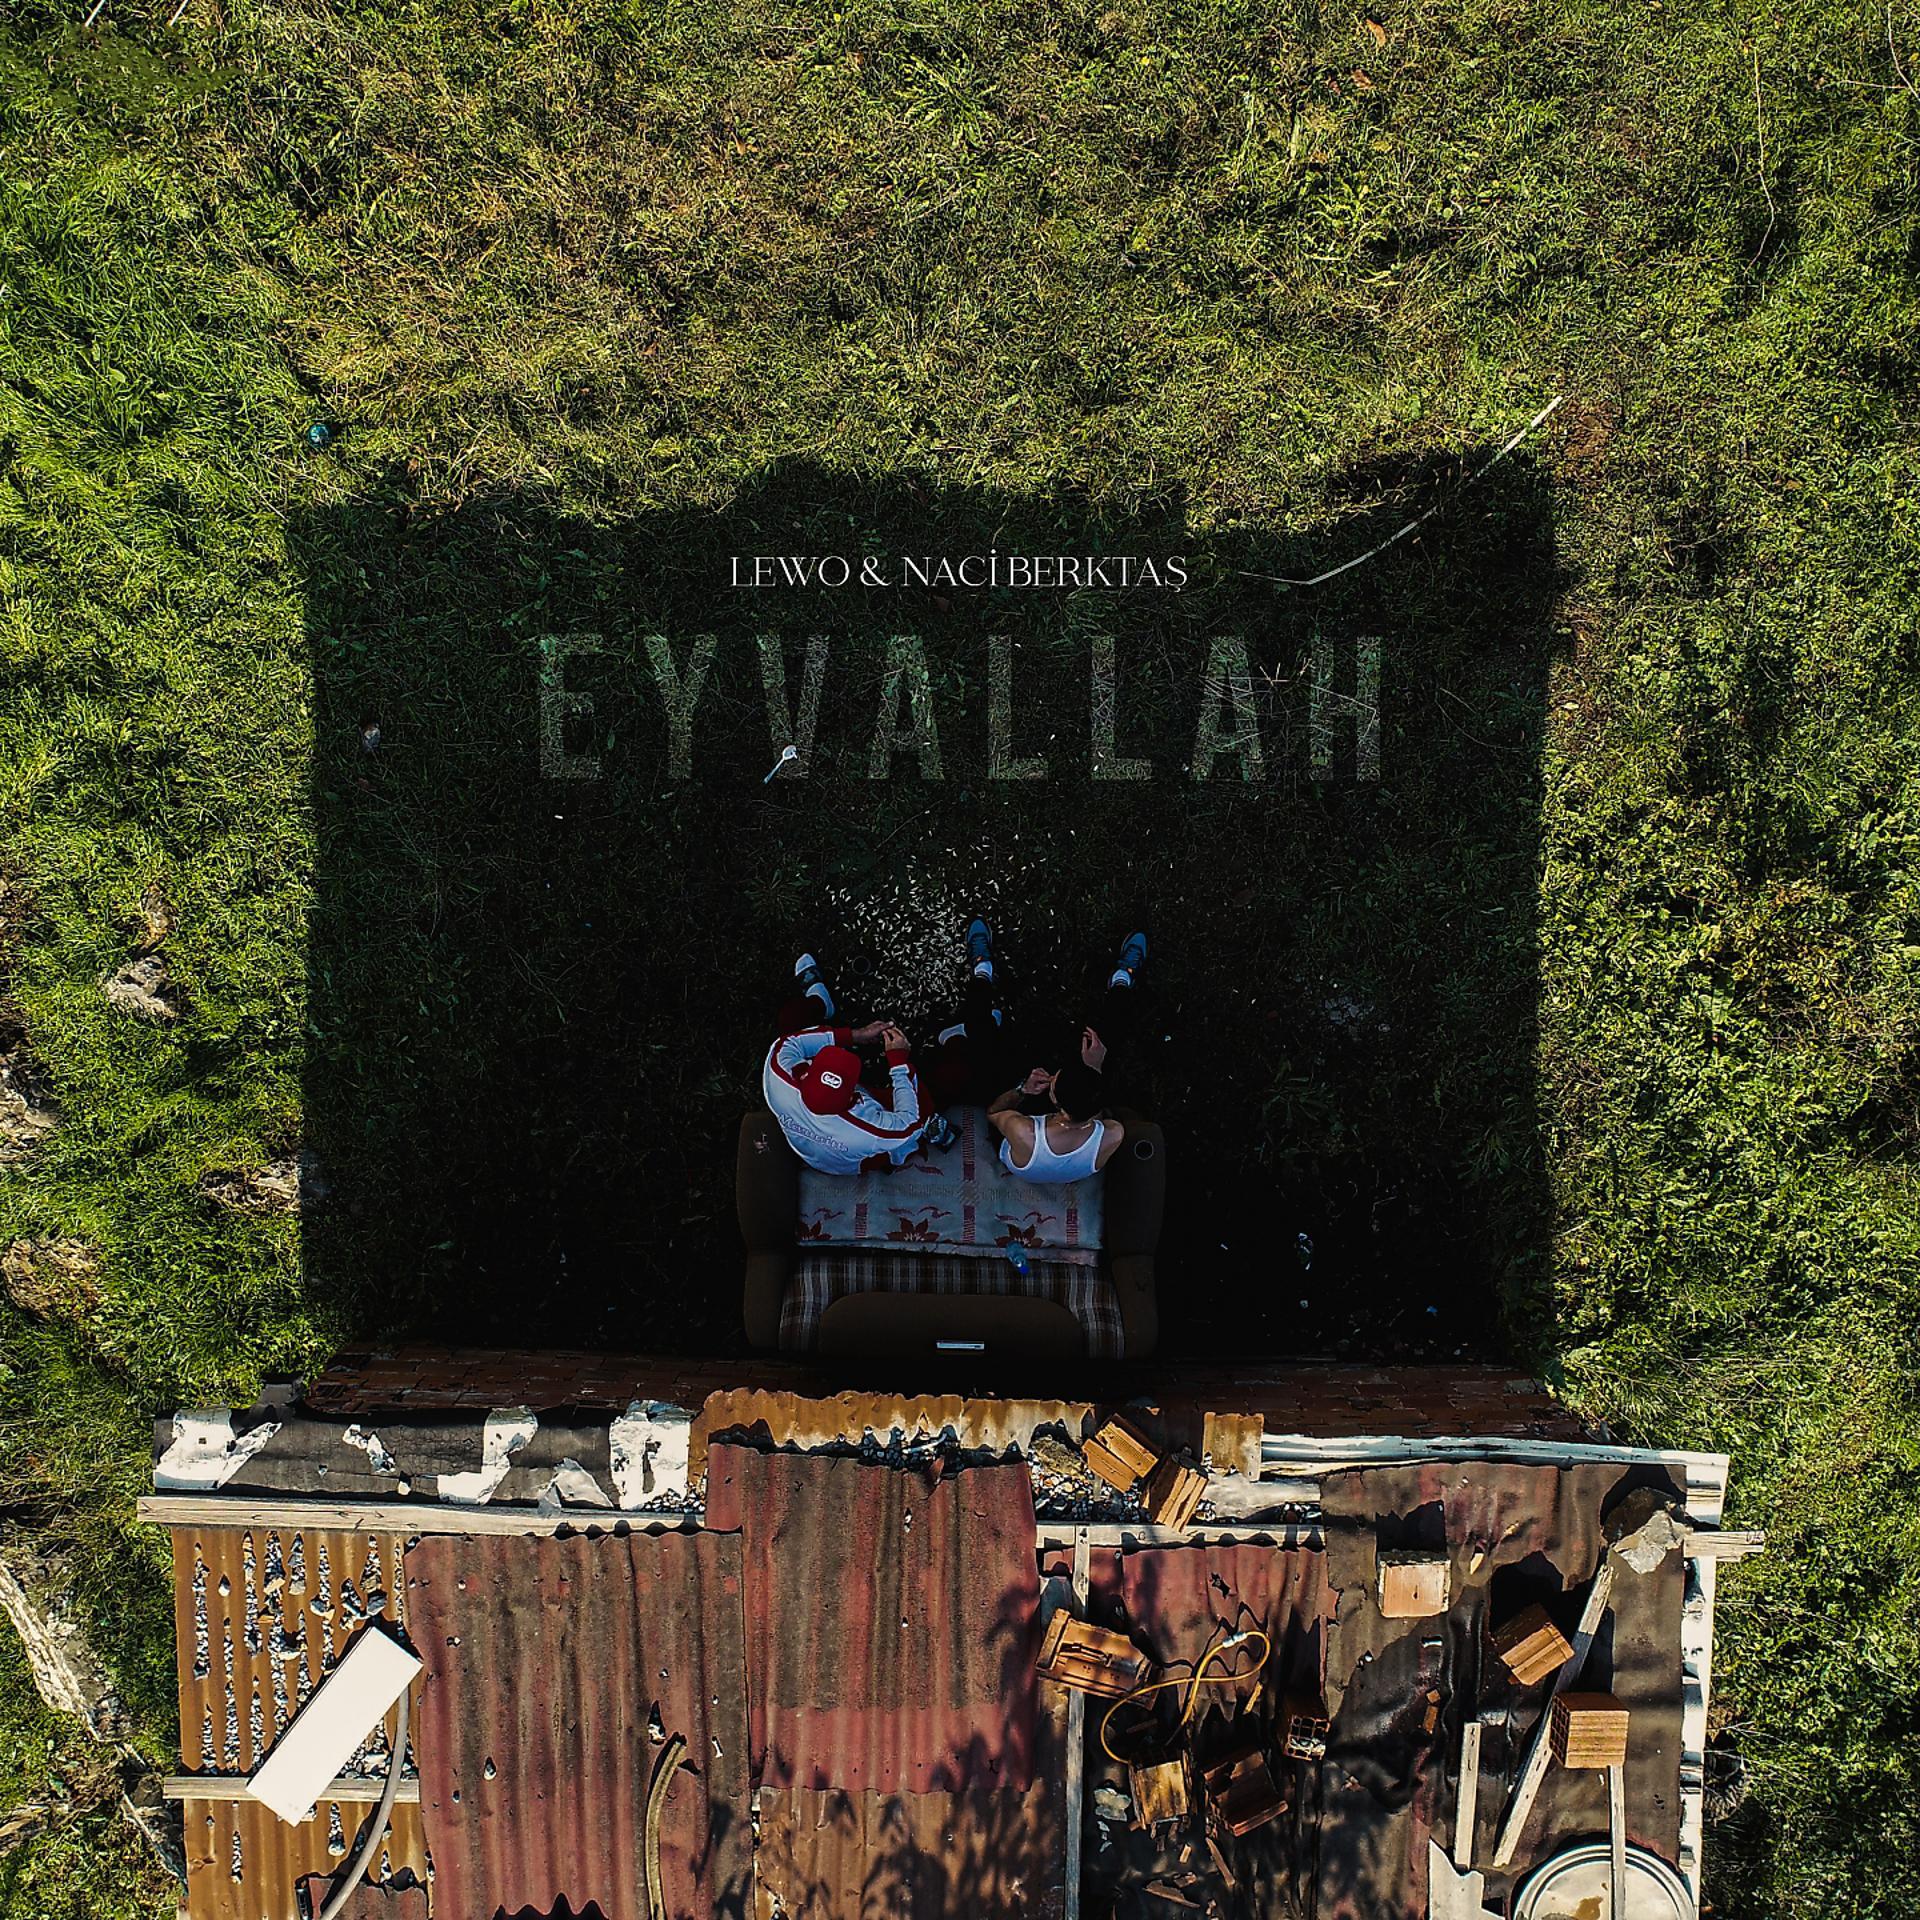 Постер альбома Eyvallah